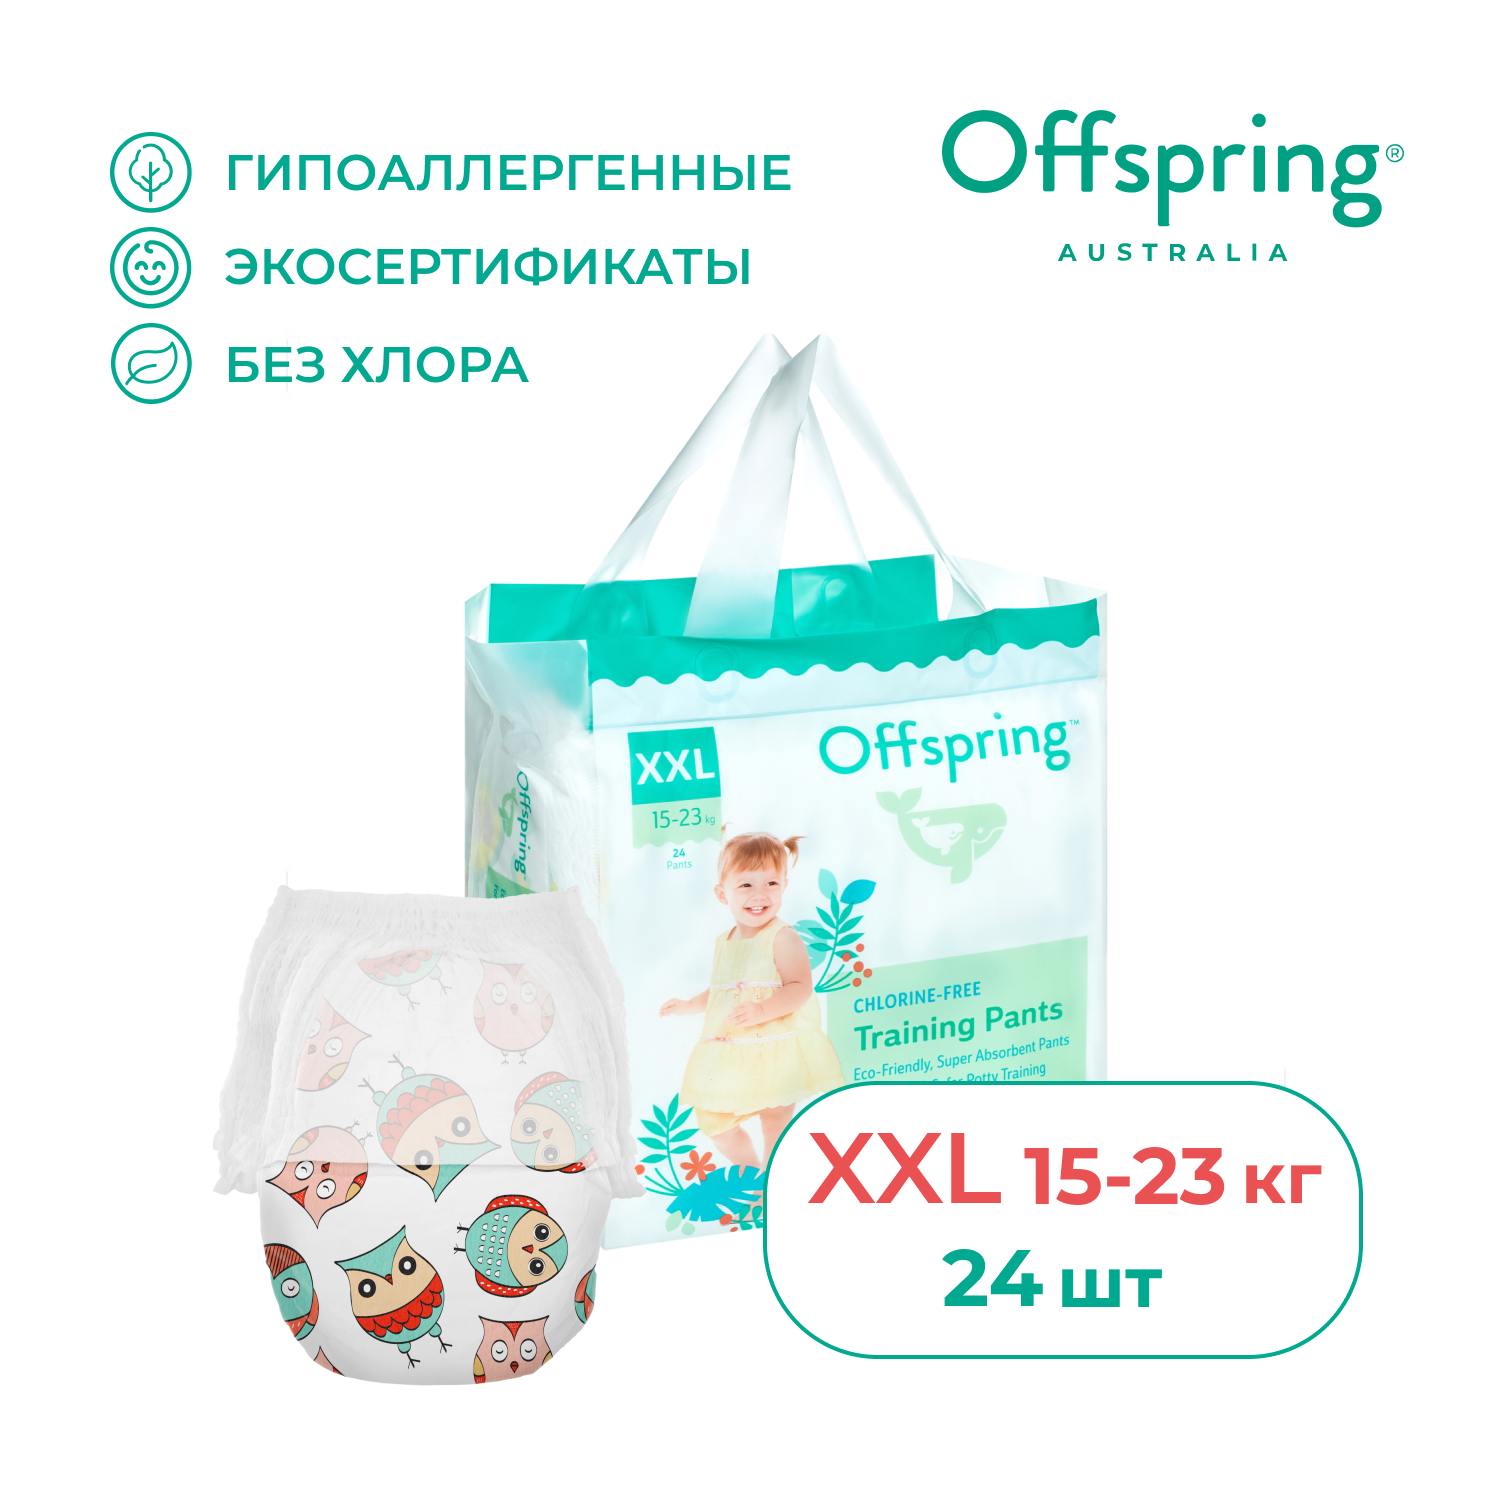 Трусики-подгузники Offspring XXL 15-23 кг 24 шт расцветка Совы - фото 1